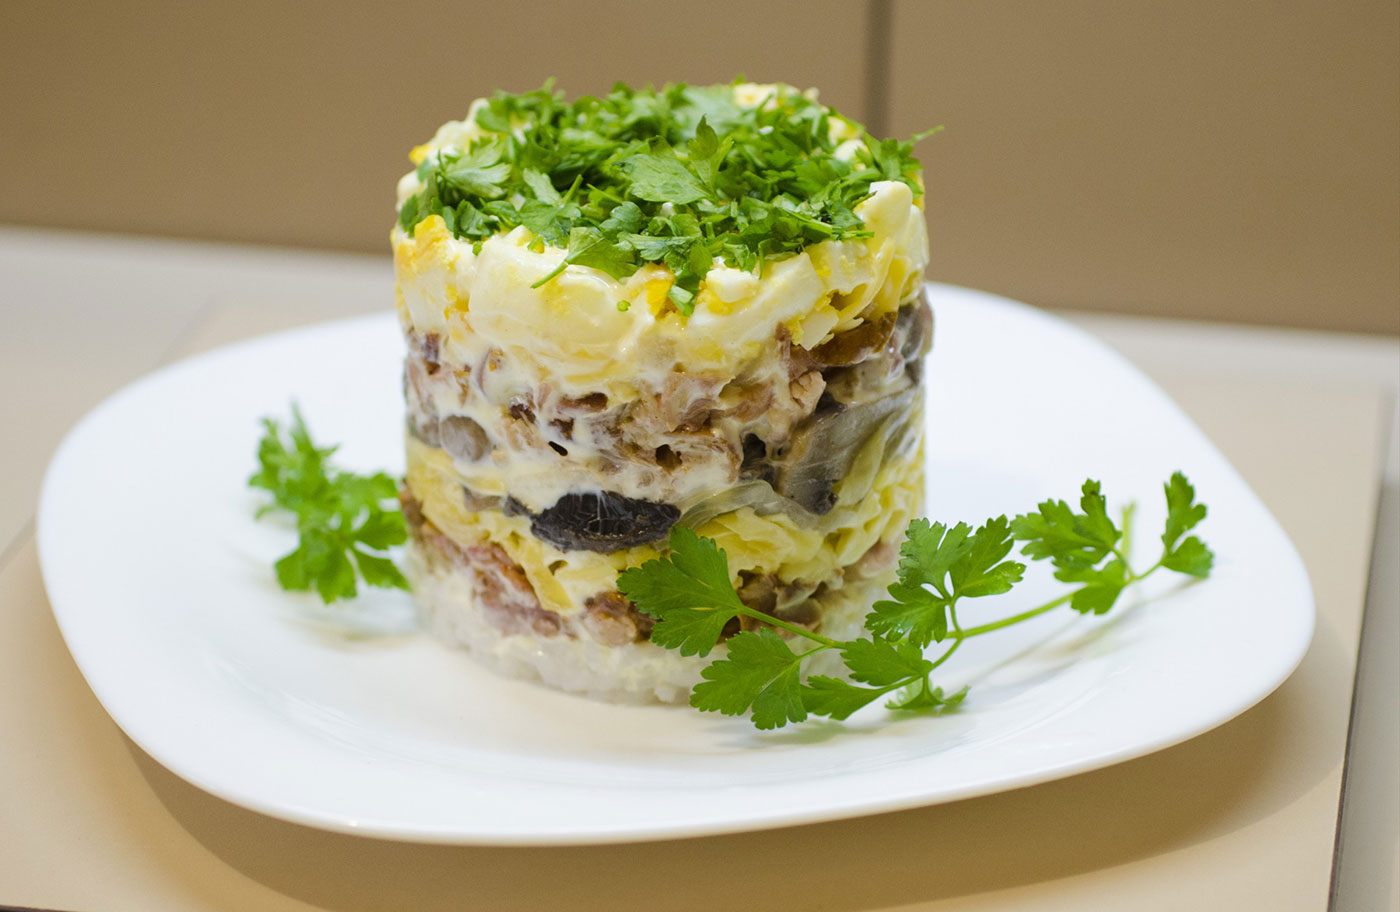 გემრიელი დიეტური სალათი ქათმის მკერდი: ნაბიჯ-ნაბიჯ რეცეპტები მაიონეზით, ბოსტნეულით, სოკოთი და კვერცხი